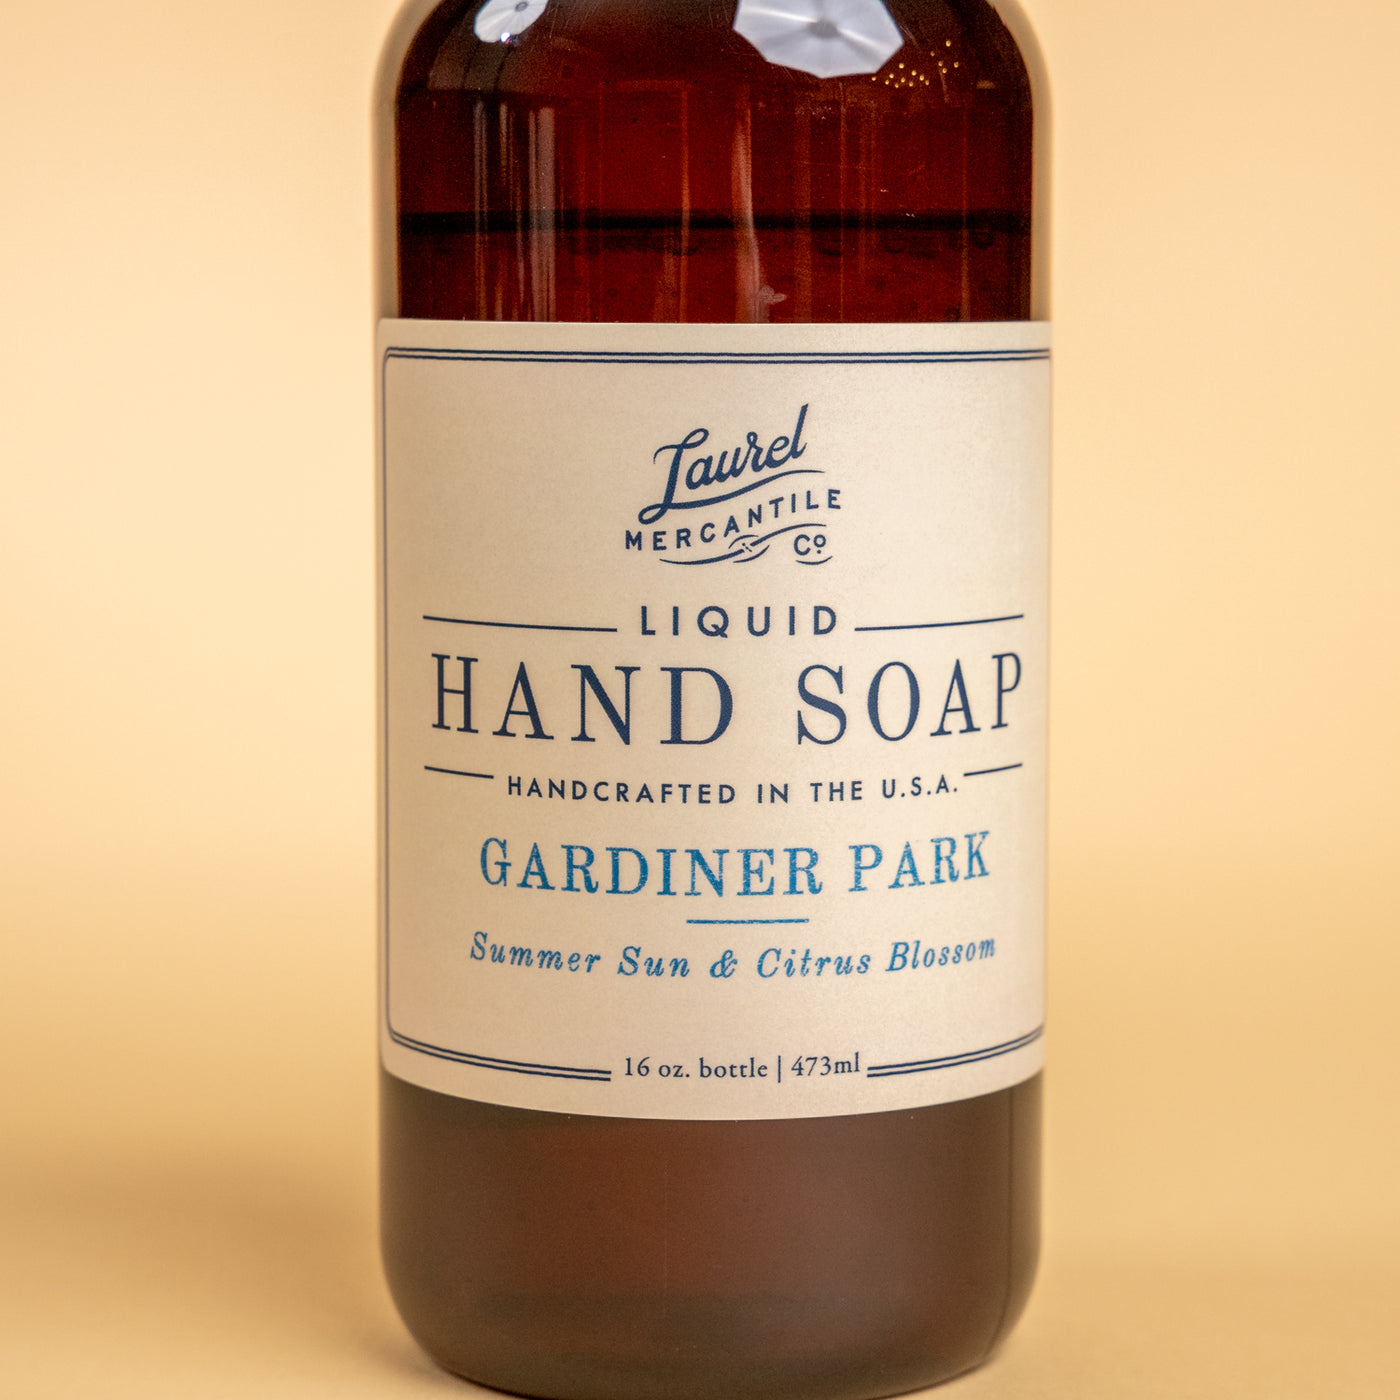 Gardiner Park Hand Soap Refill